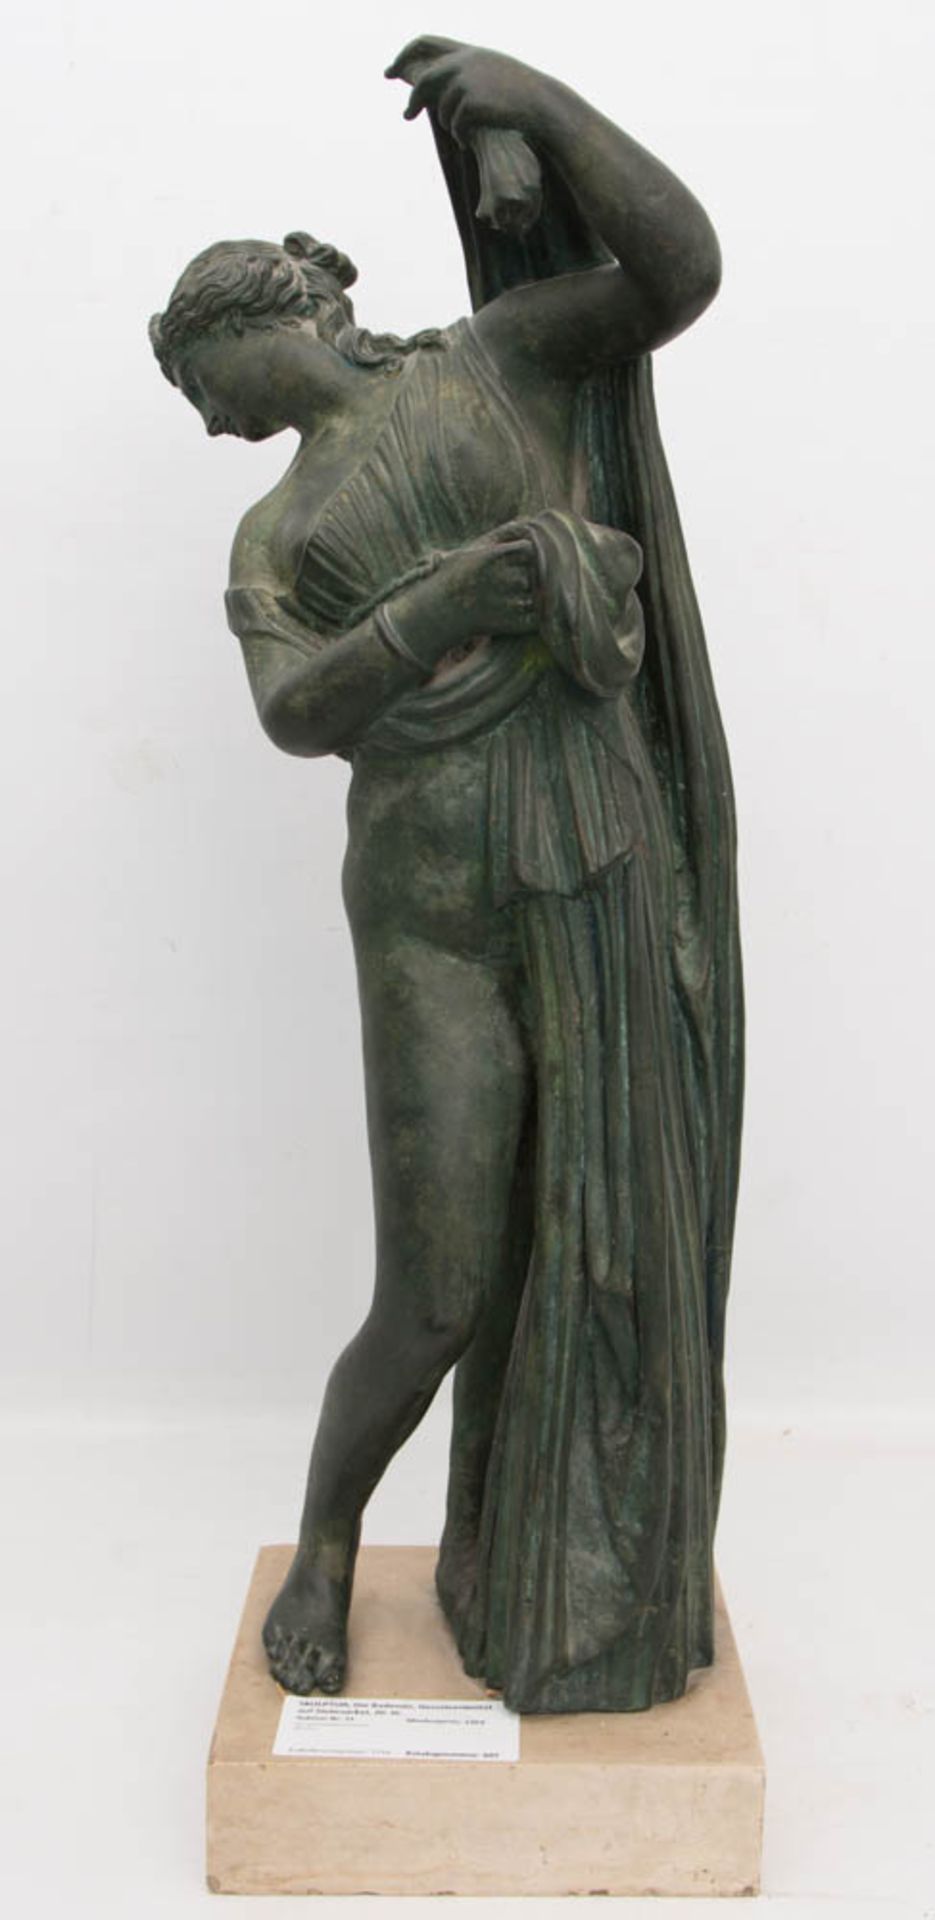 SKULPTUR, Die Badende, wohl bemalter Zinkguss auf Steinsockel, 20. Jh.Sehr gut erhaltene Skulptur.68